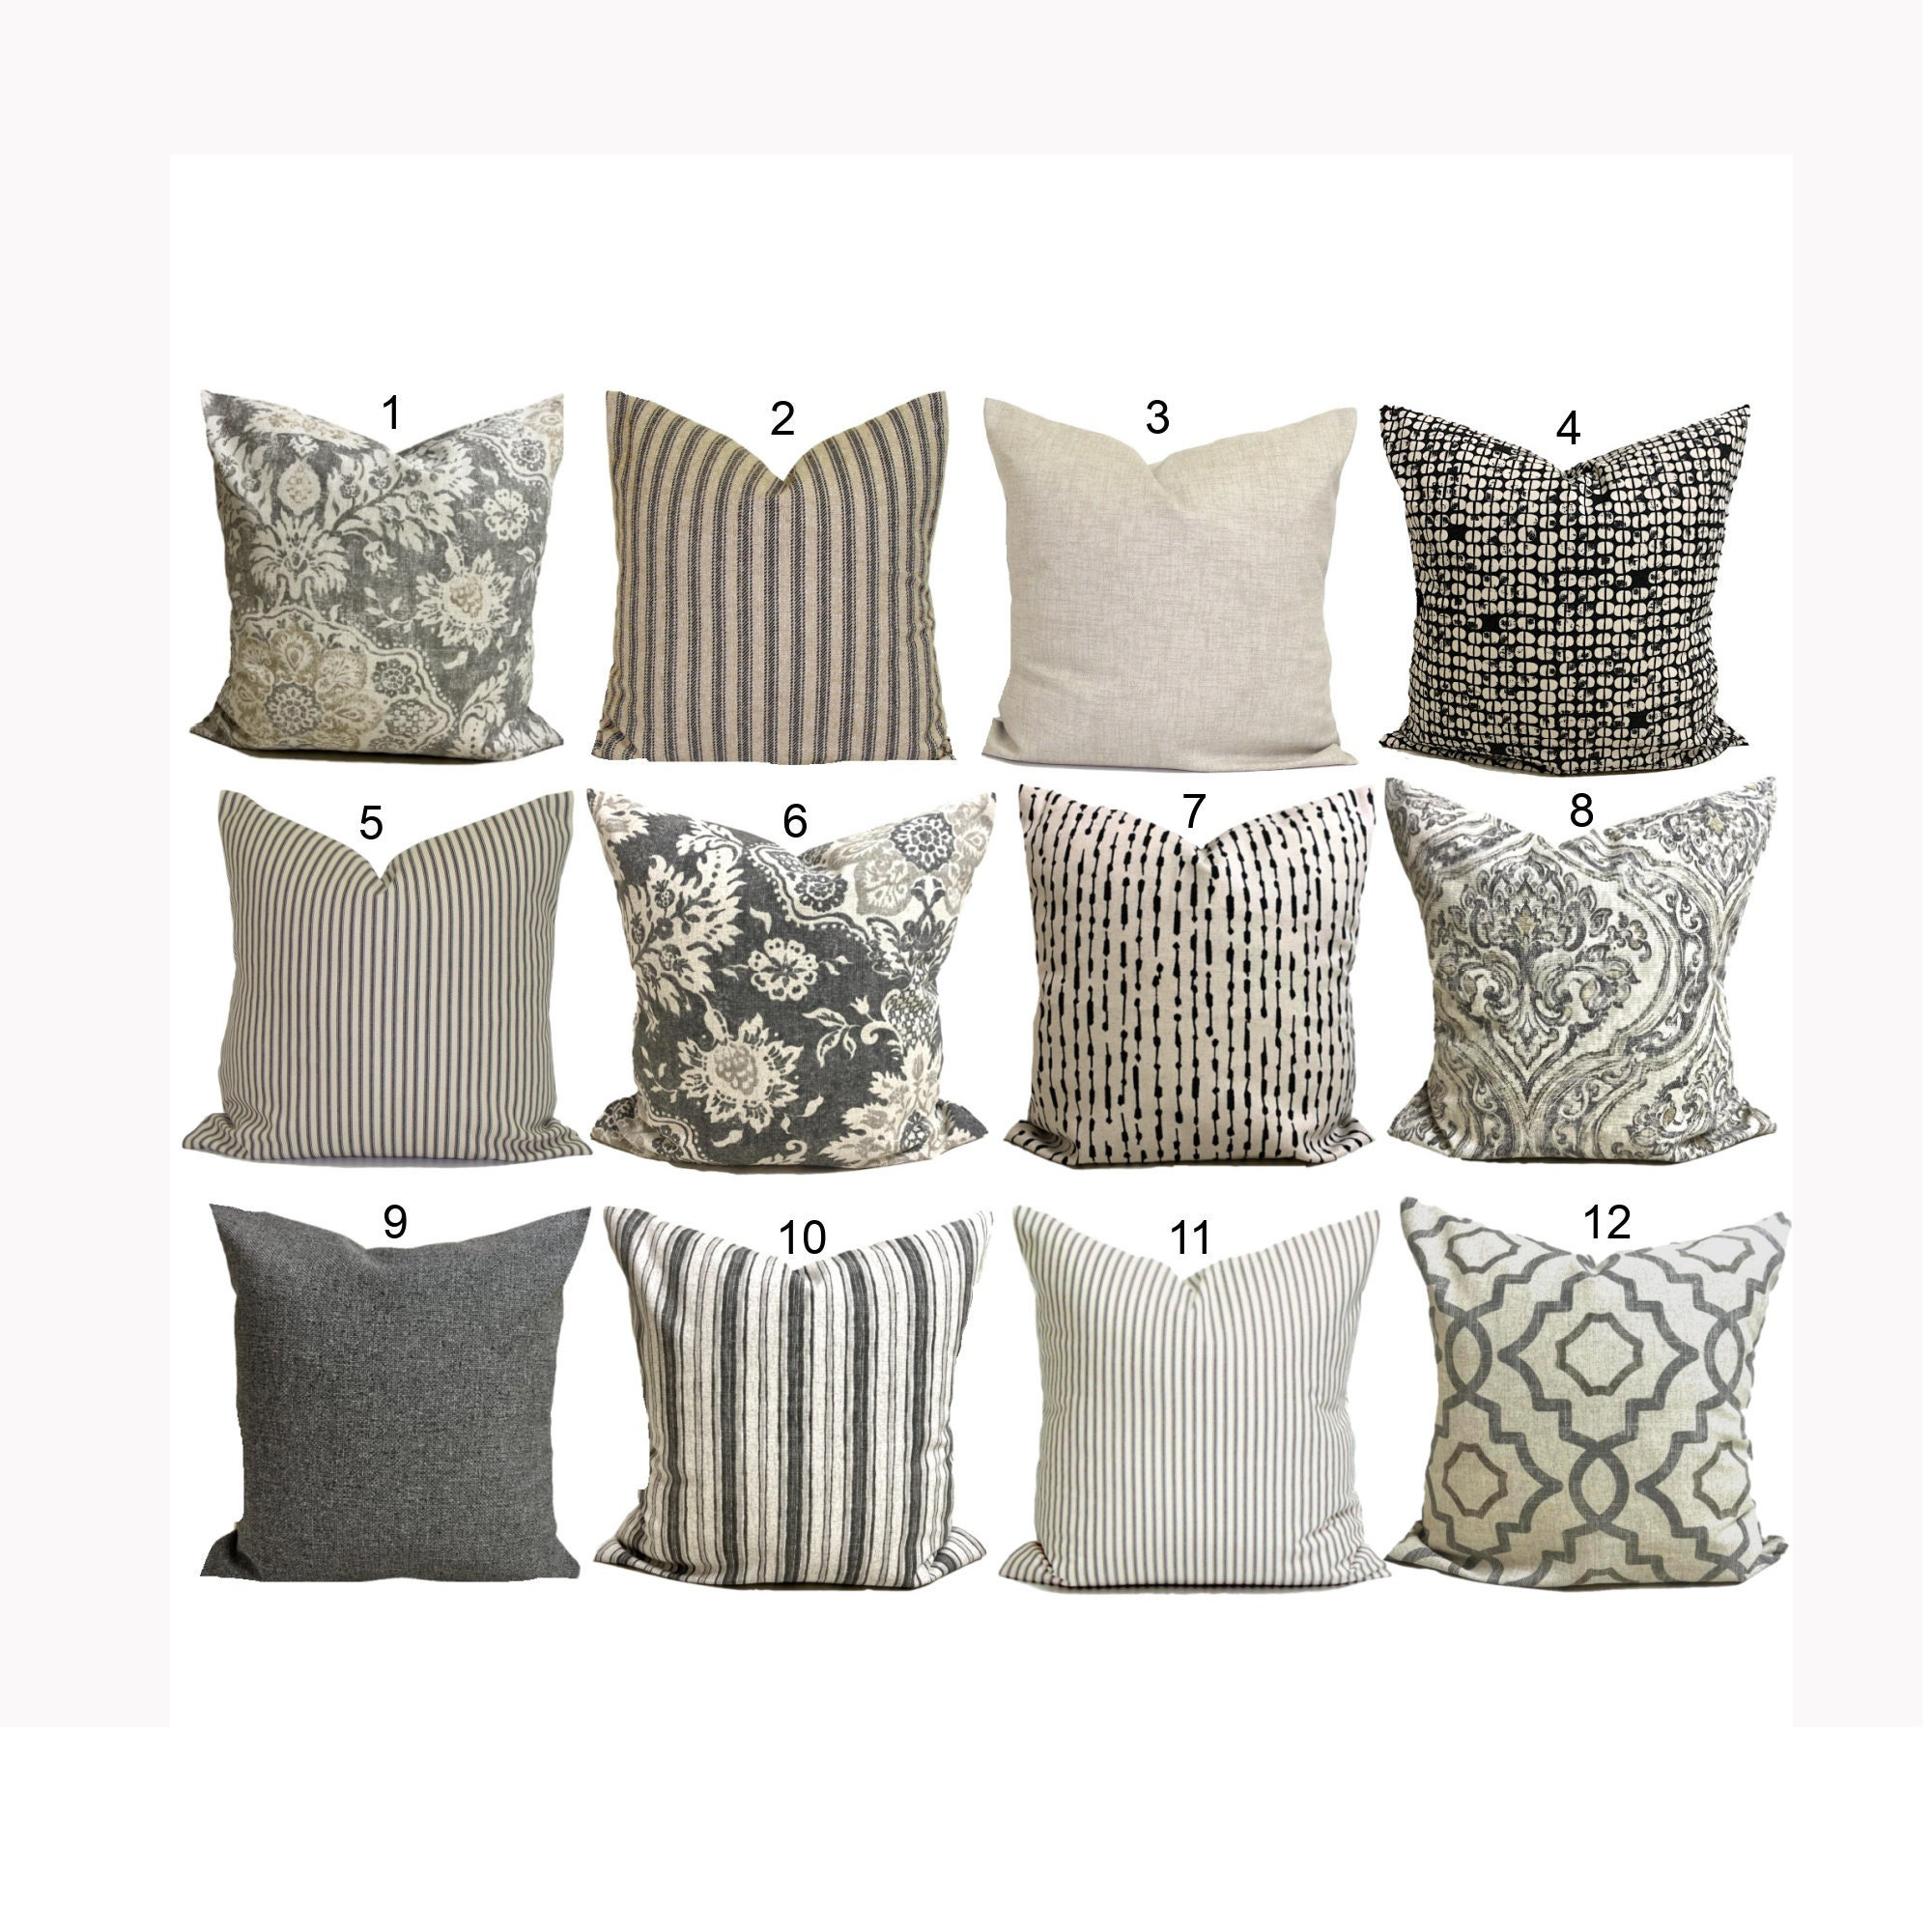 GRAY PILLOWS, TAN Throw Pillow Covers, Grey Pillow Covers for 20x20 Pillow,  16x16 Pillows, 18x18 Pillows, All Sizes 